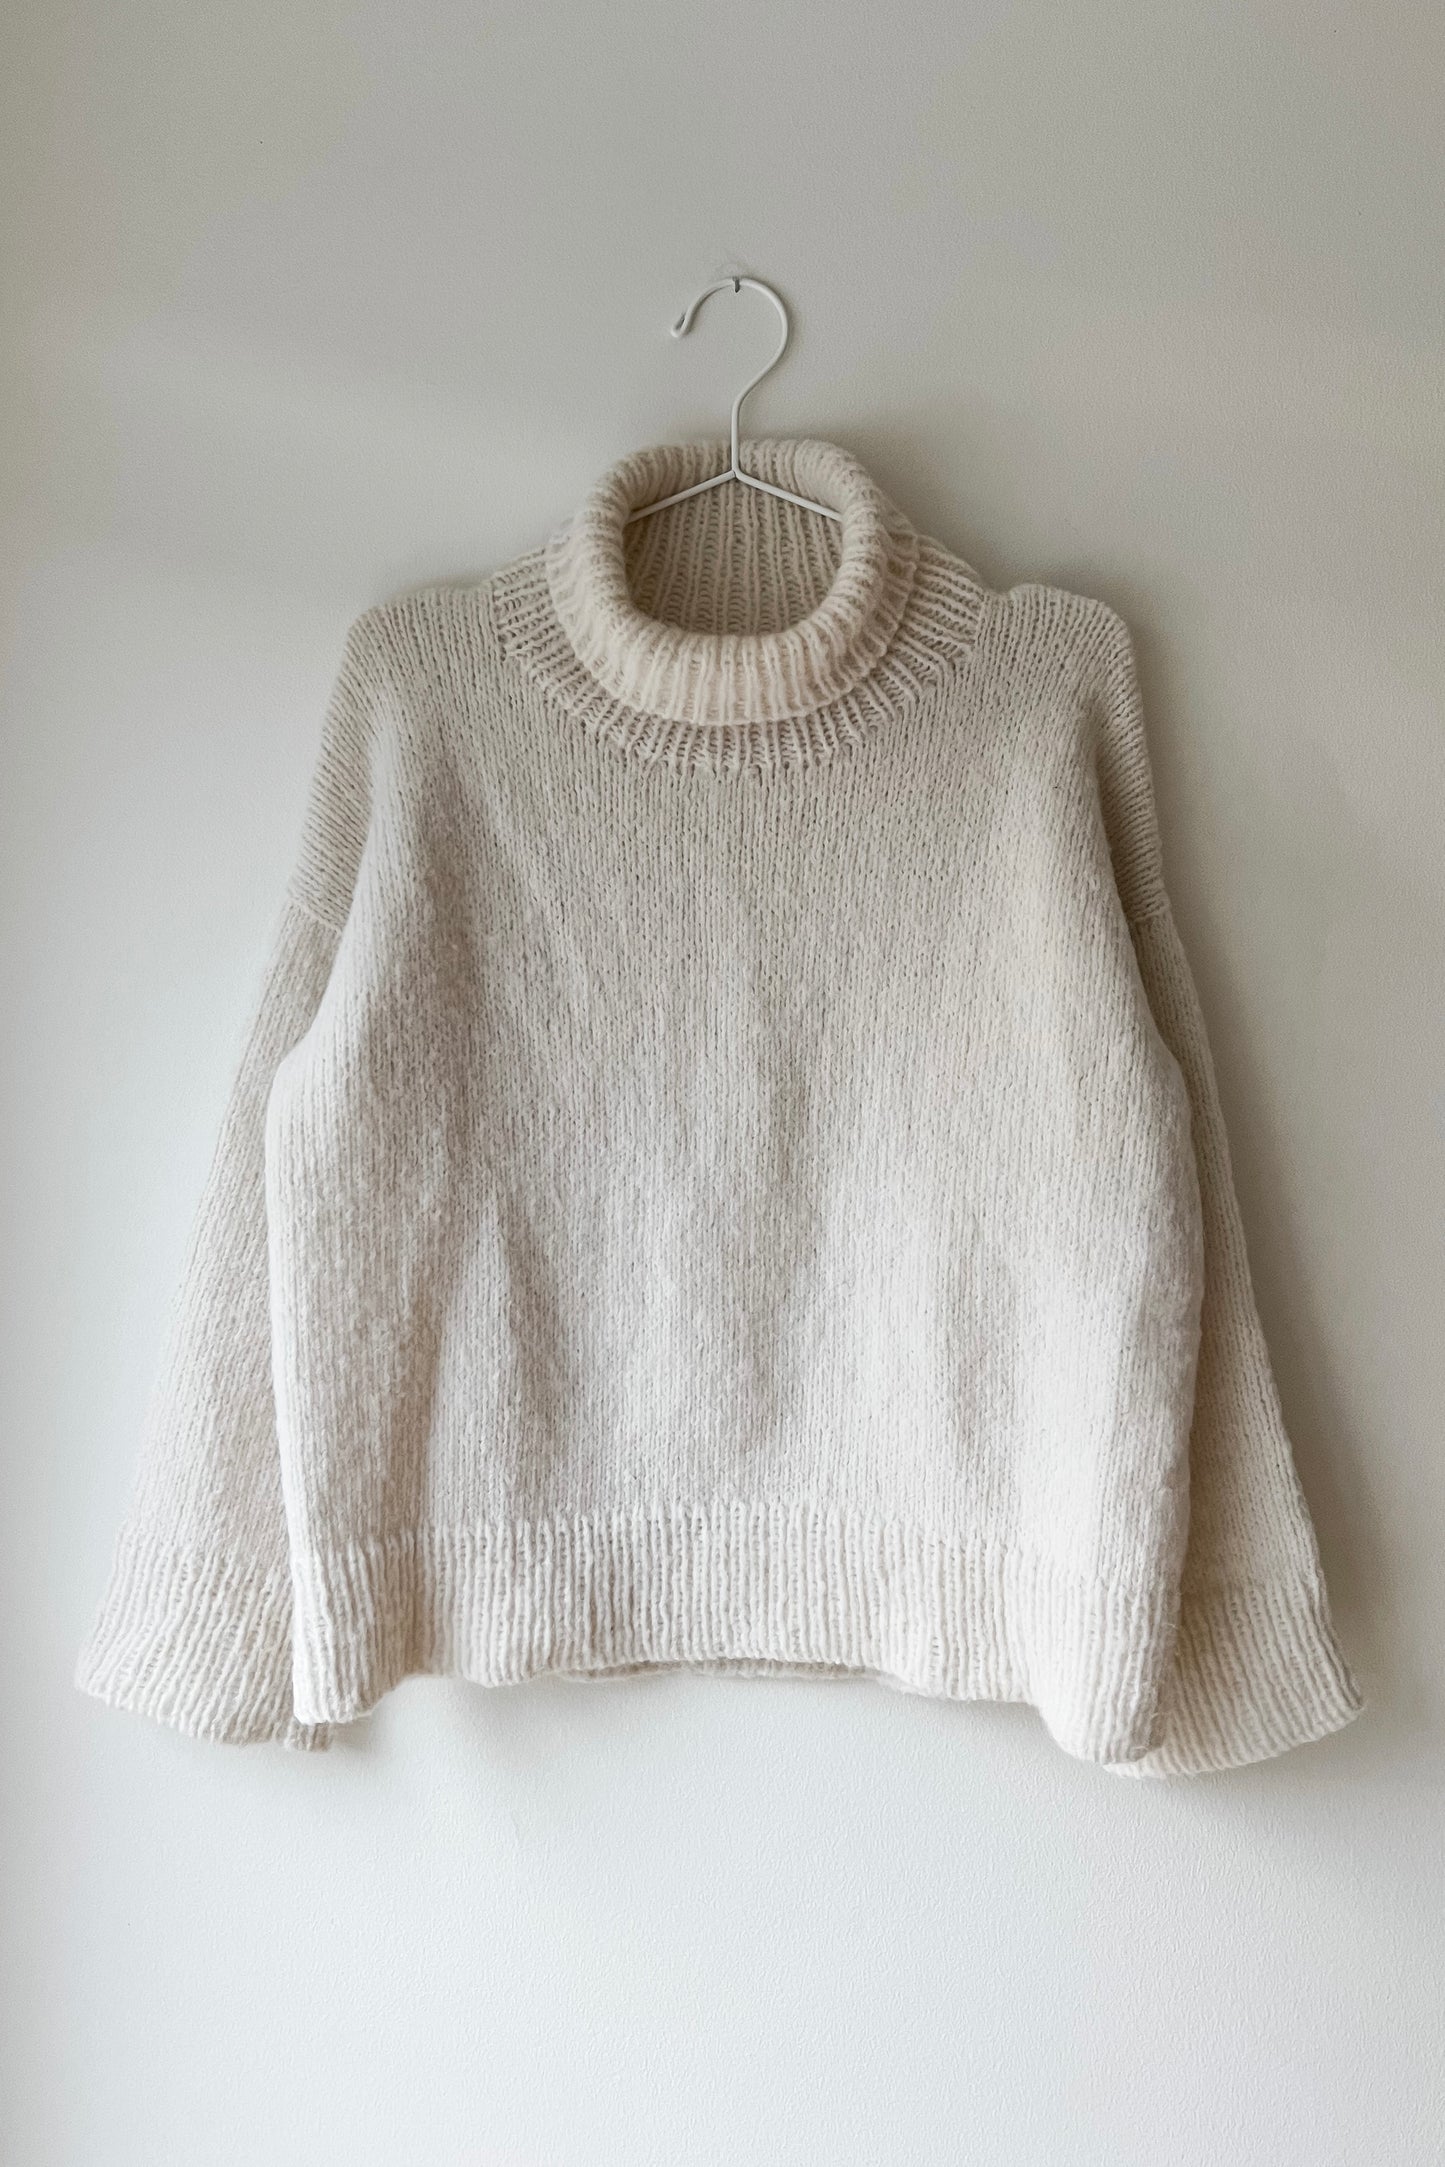 Simplicity Sweater